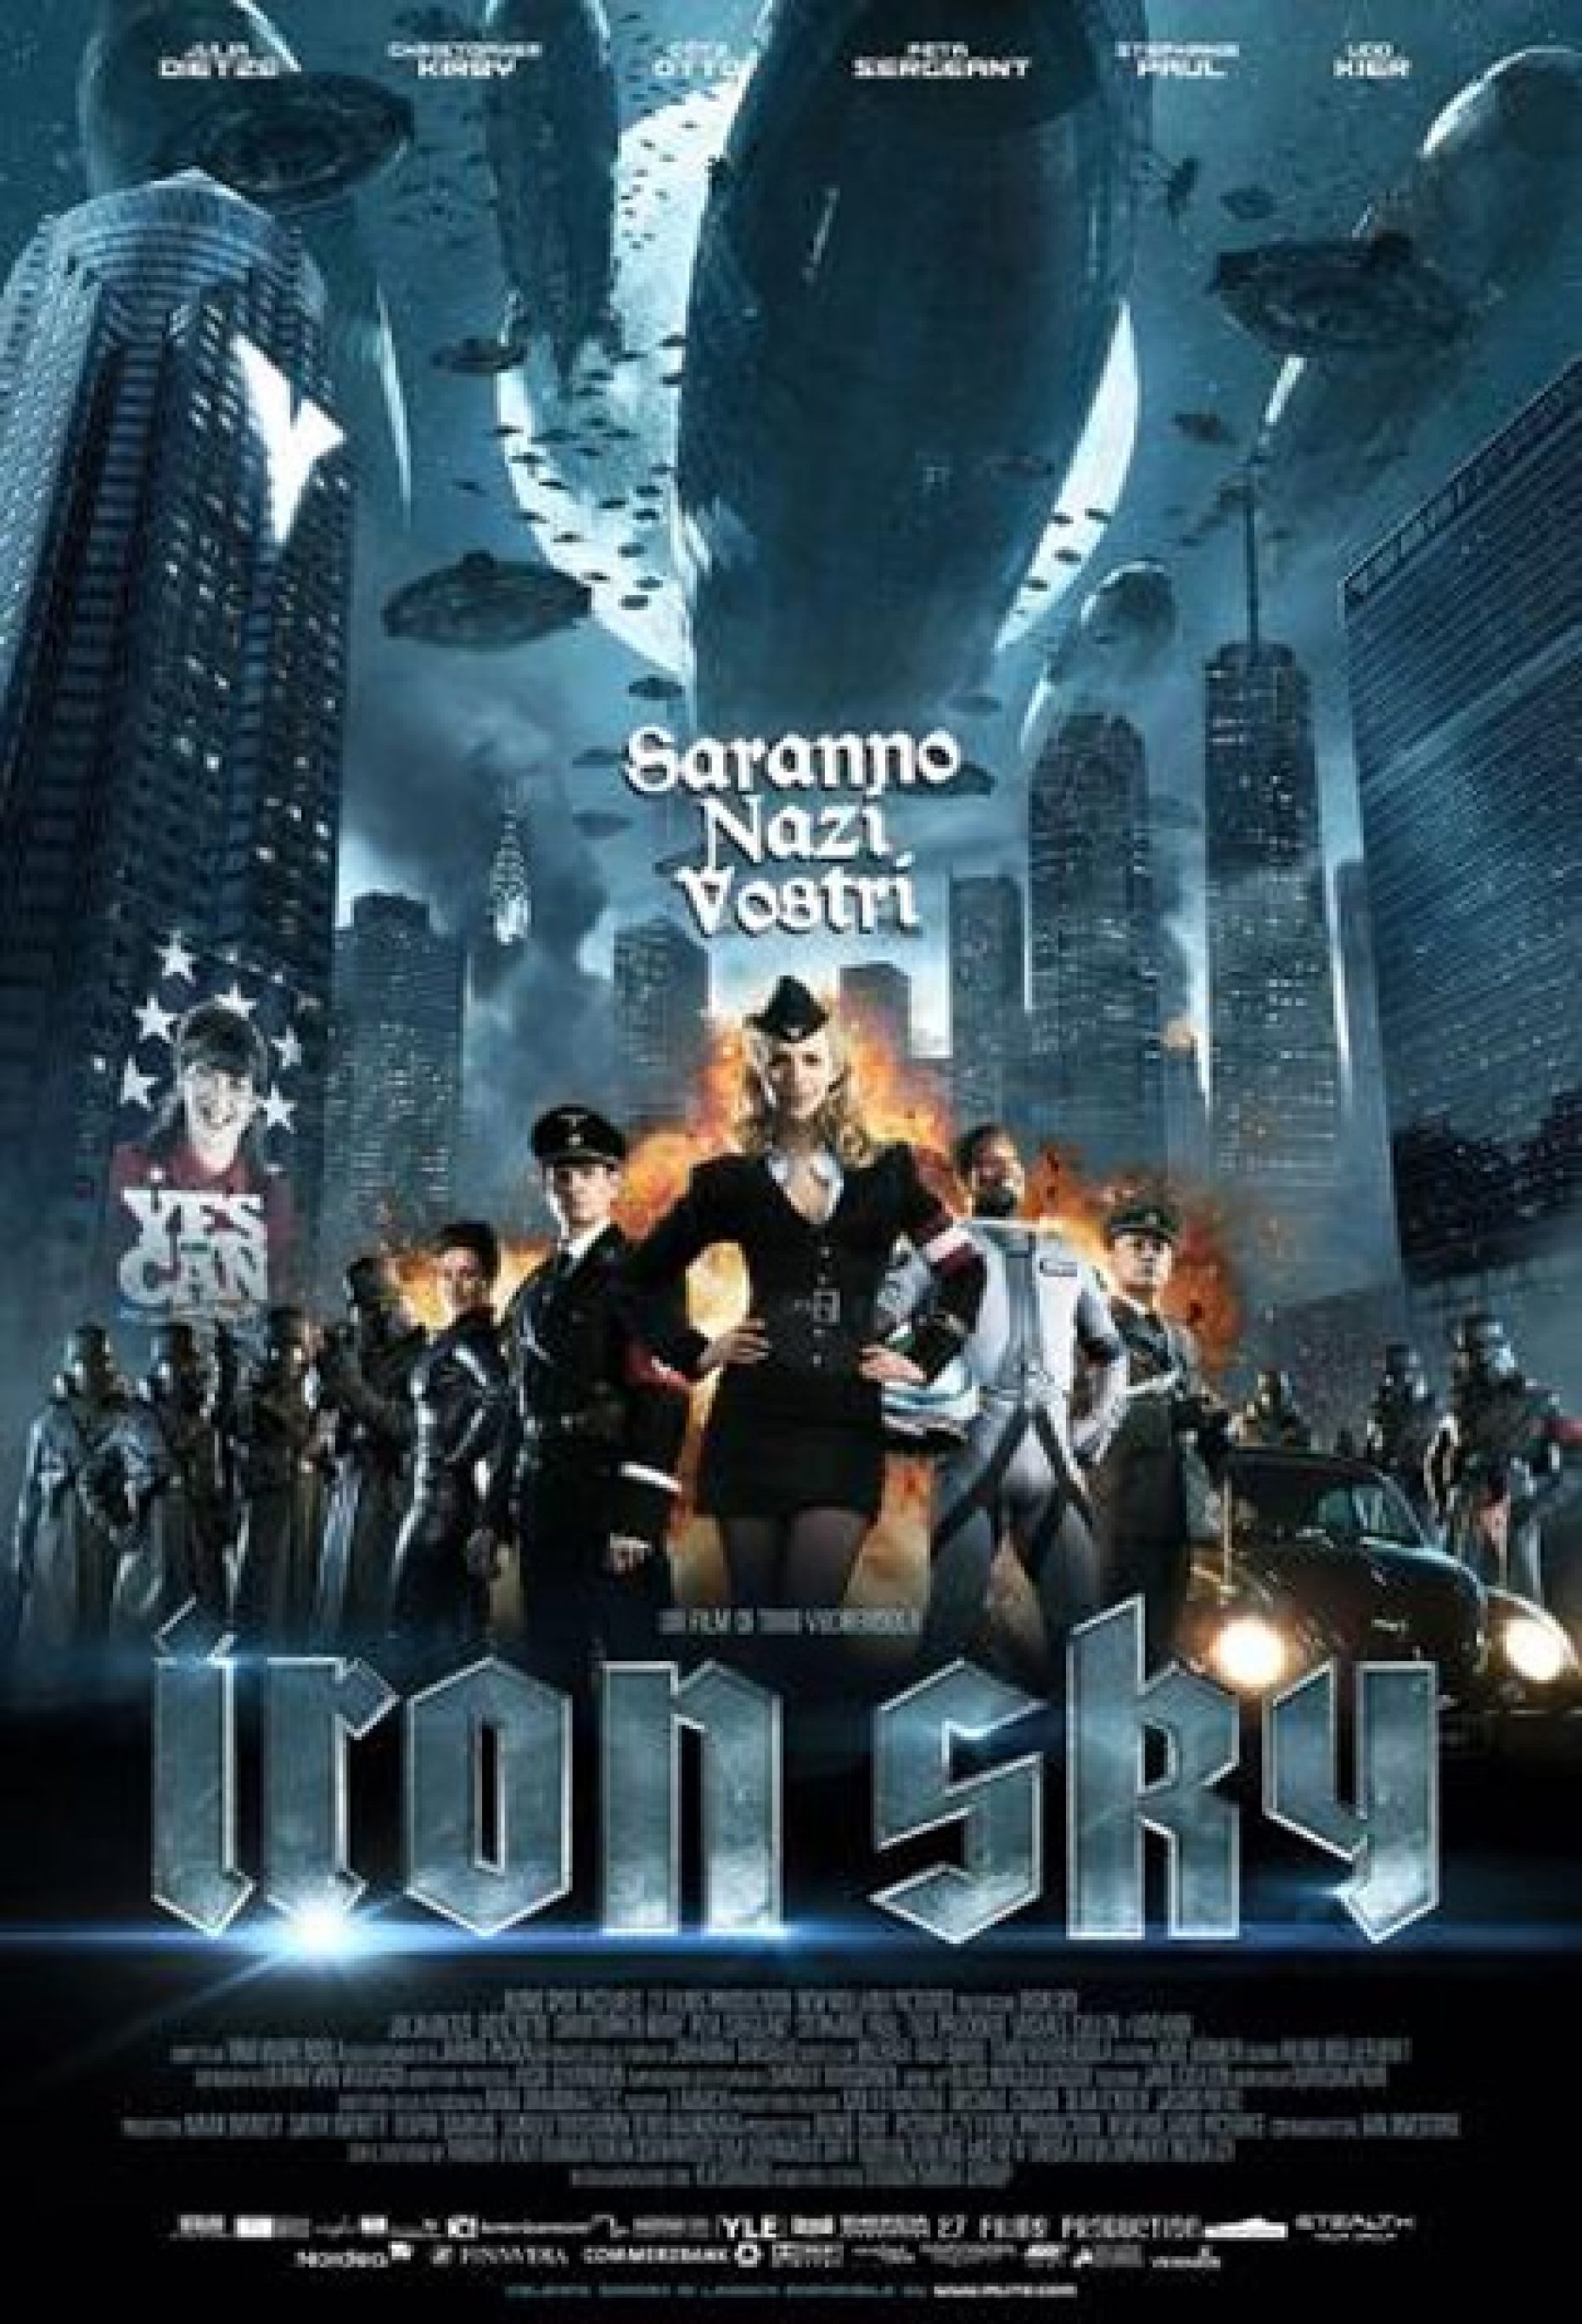 Iron Sky – Saranno nazi vostri (Vuorensola, 2012)